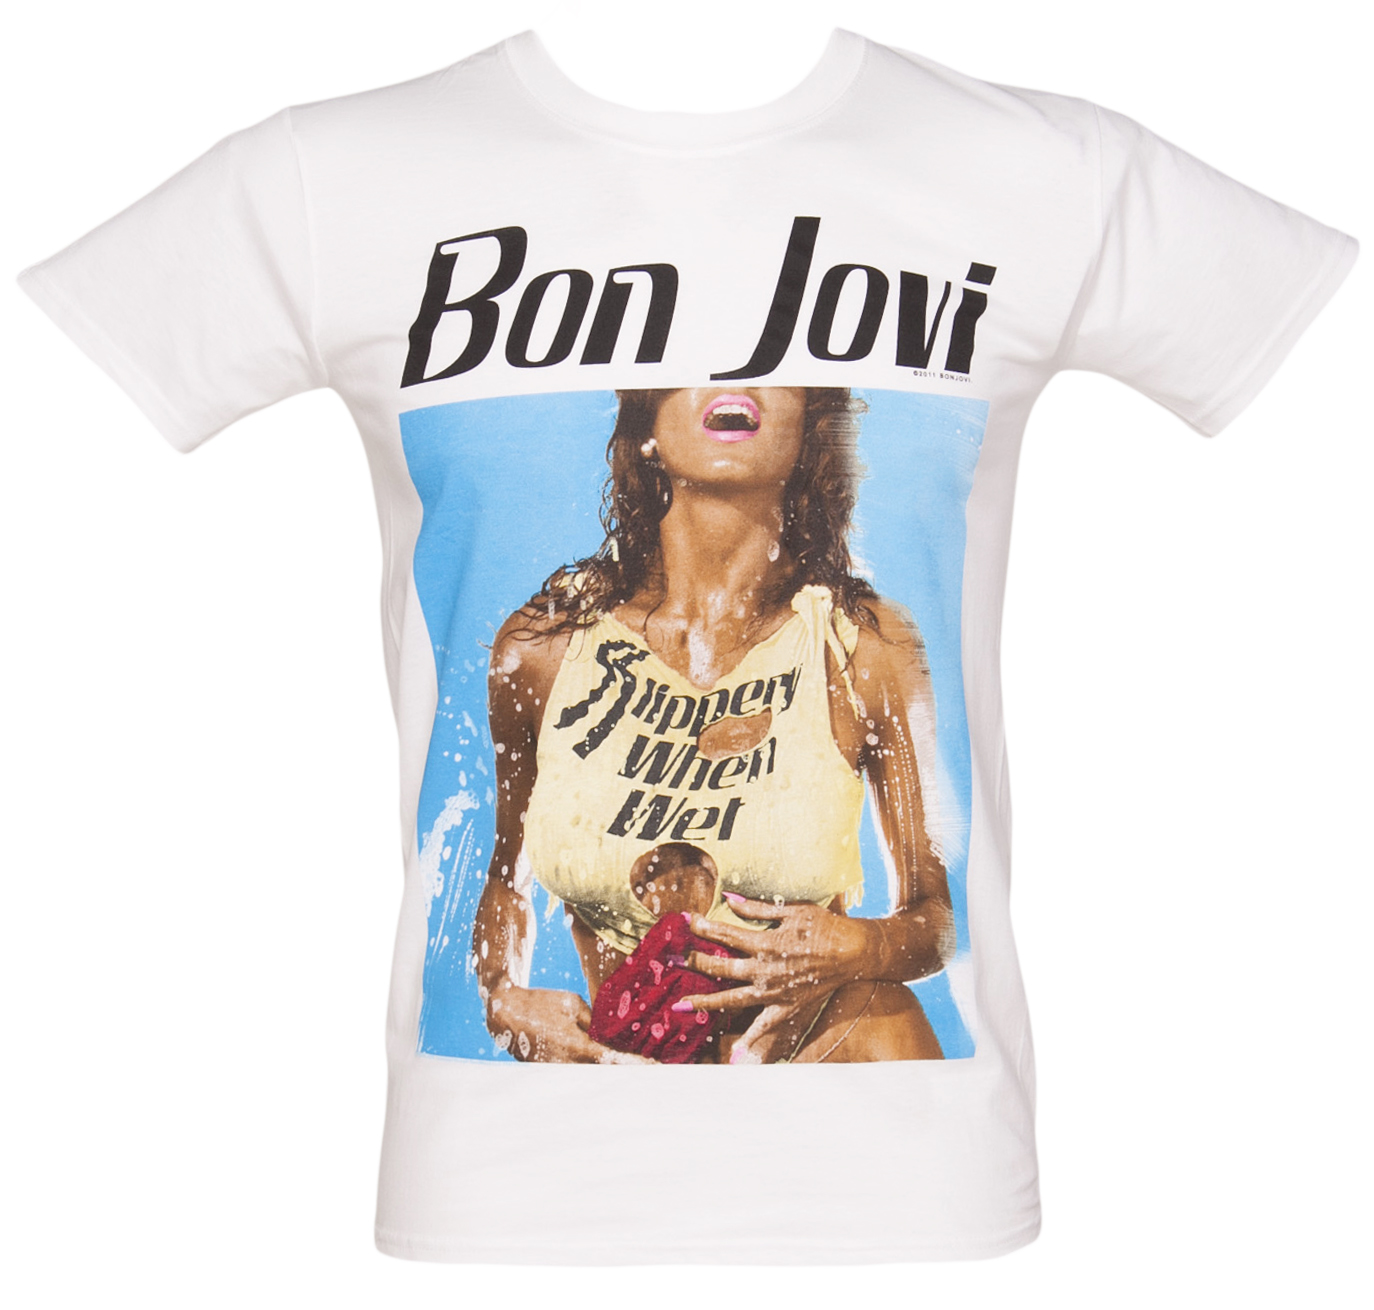 Mens White Slippery When Wet Bon Jovi T-Shirt